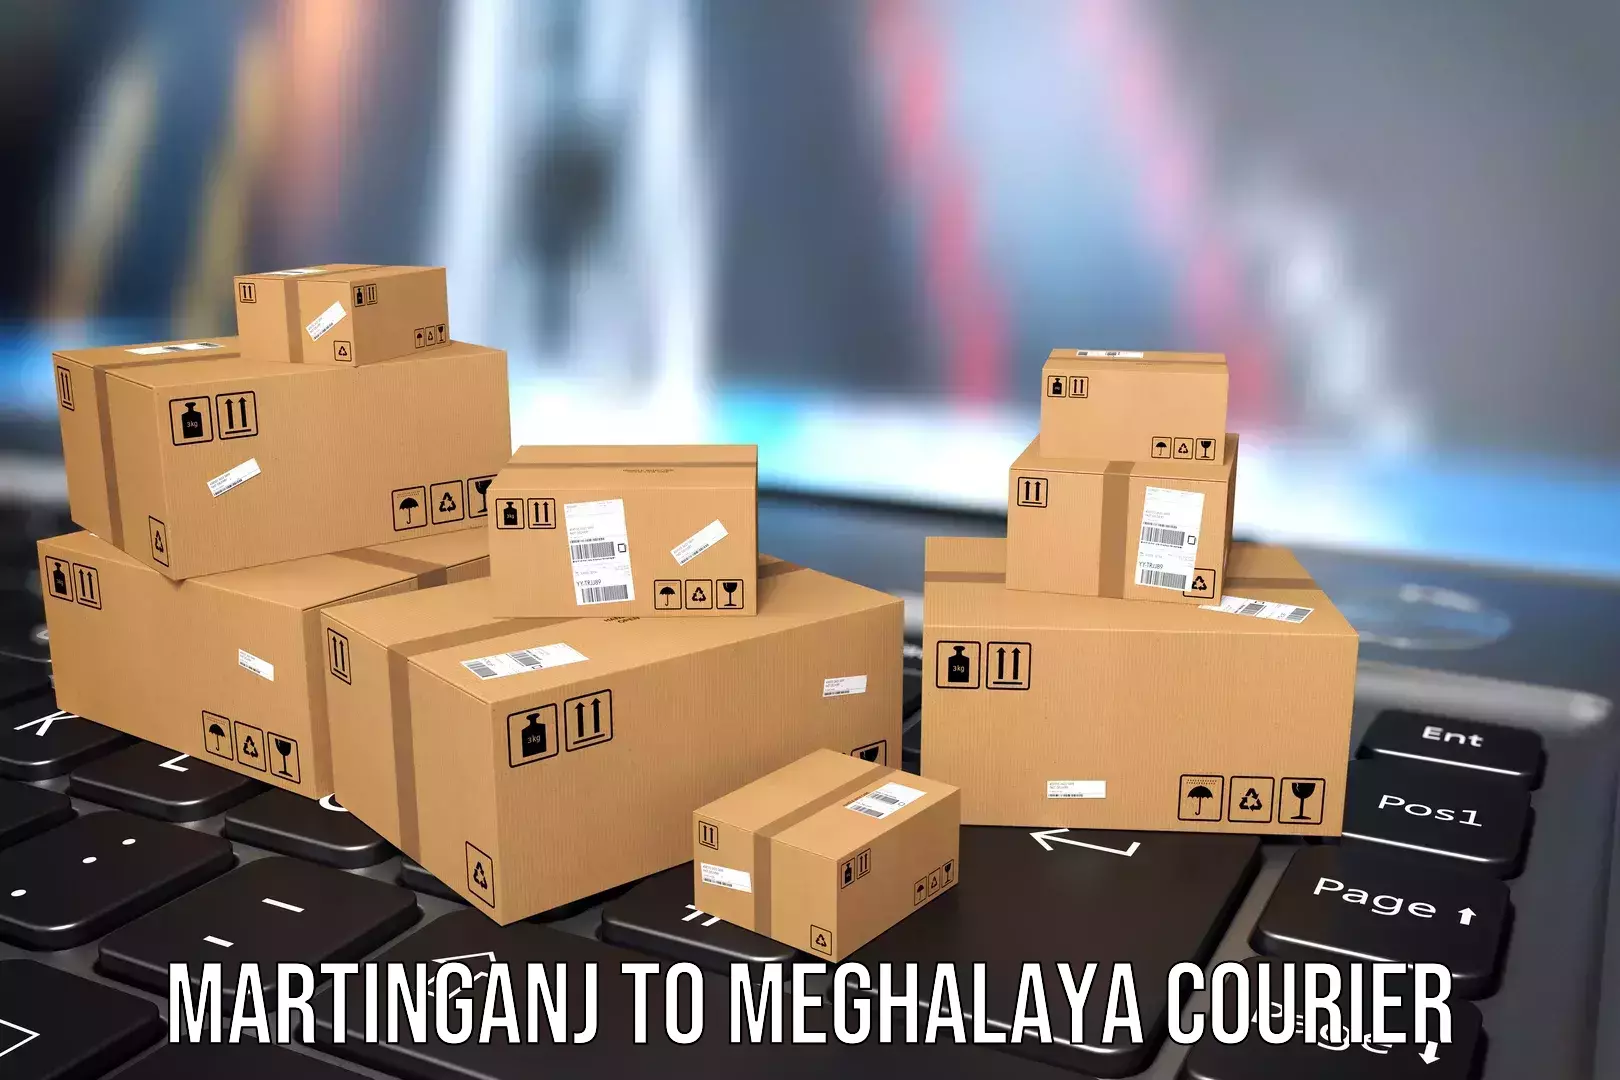 Luggage transport operations Martinganj to Meghalaya